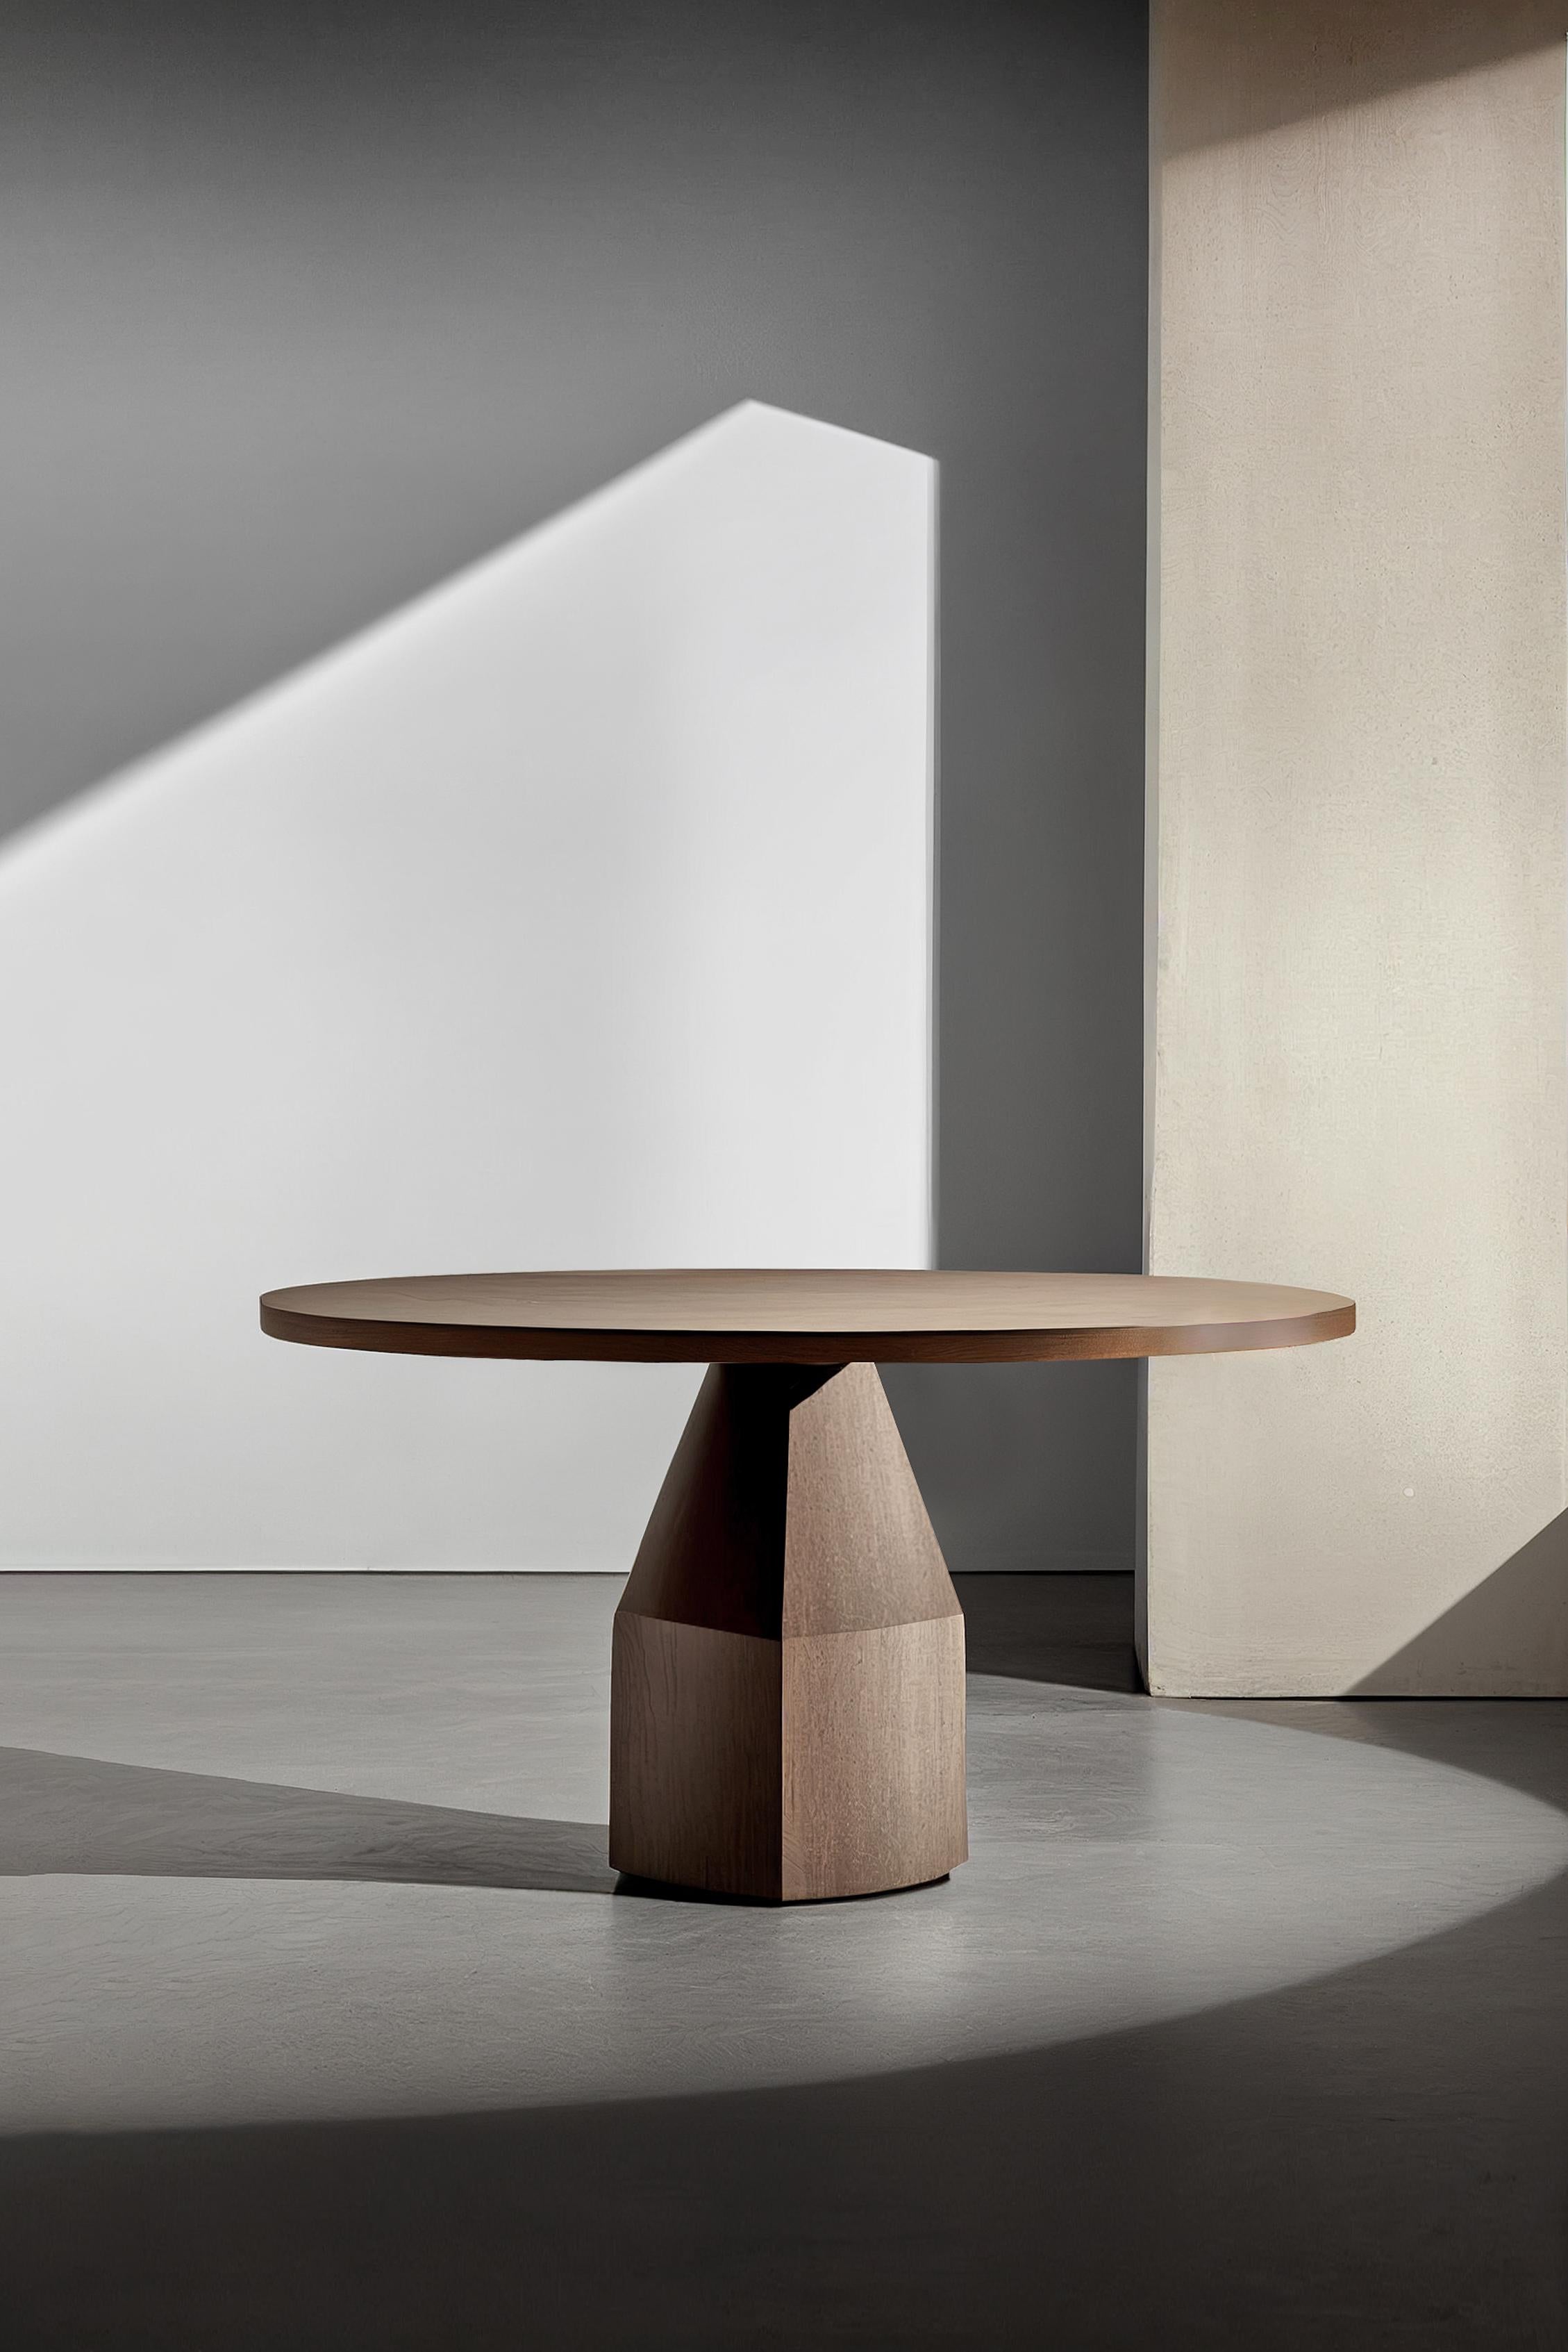 Moka esstisch, runder tisch für vier von NONO.

Der Moka Esstisch ist eine skulpturale Esstisch-Kollektion, die von der ikonischen italienischen Mokkakanne inspiriert ist. Die aus Massivholz gefertigten, zeitgenössischen Formen sind ein Entwurf